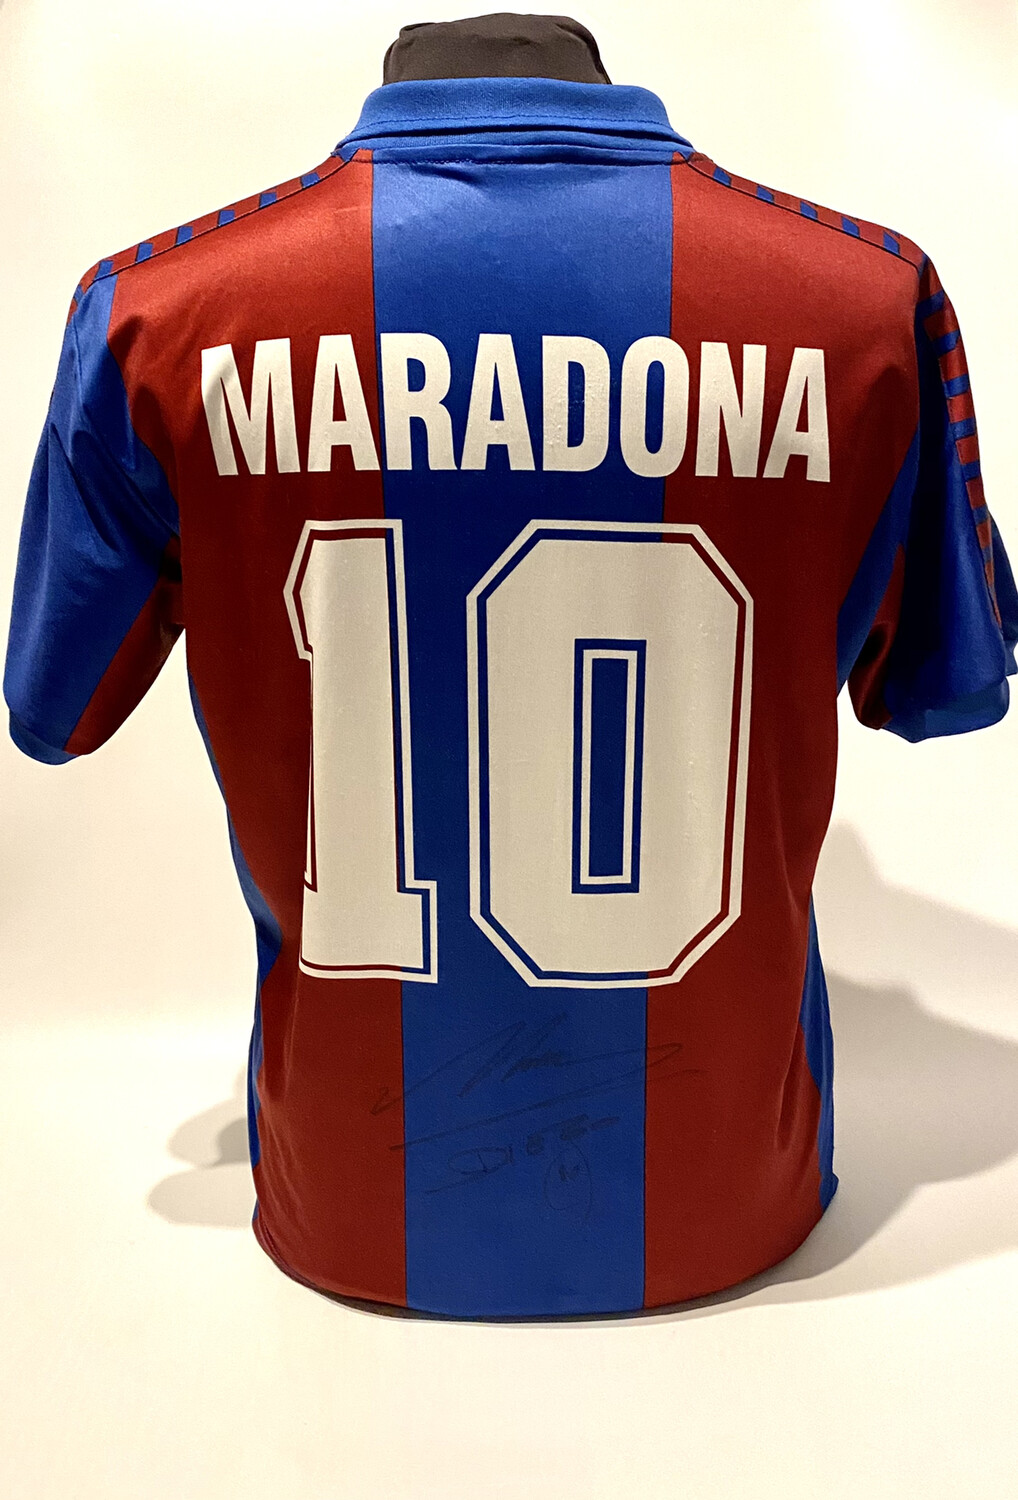 Diego Maradona Hand Signed FC Barcelona Shirt Jersey with COA